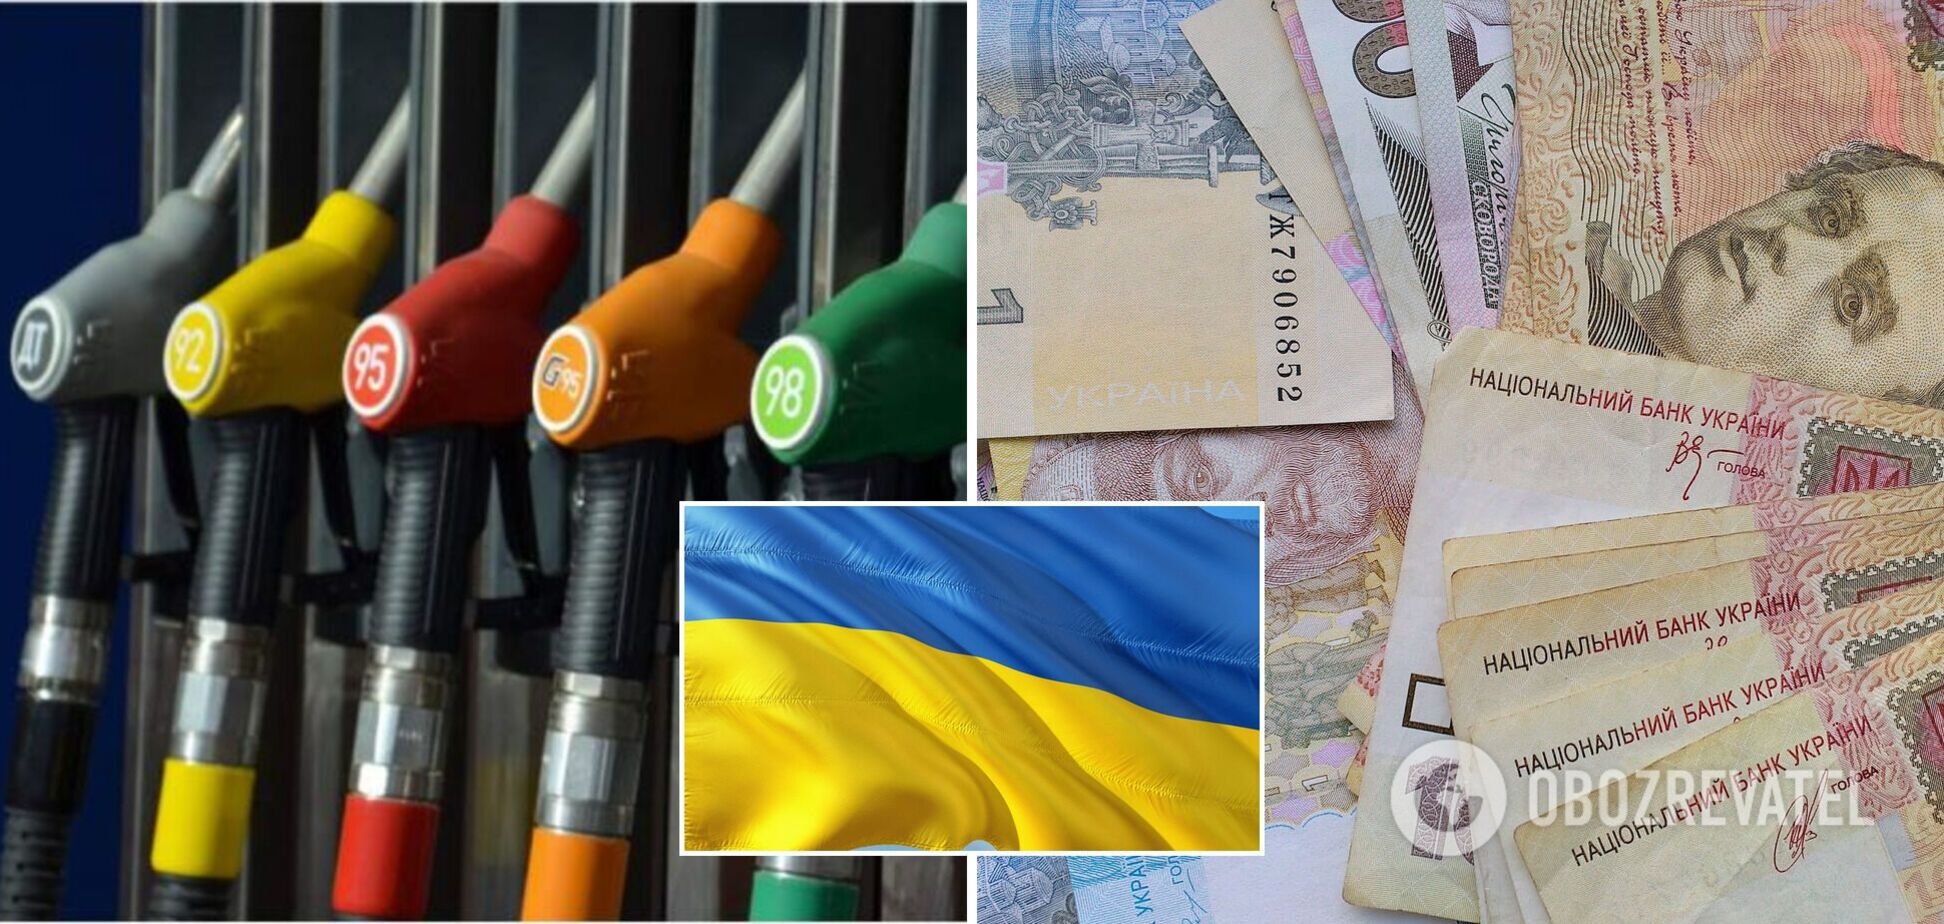 Якими будуть ціни на бензин і дизпаливо в Україні: озвучено прогноз